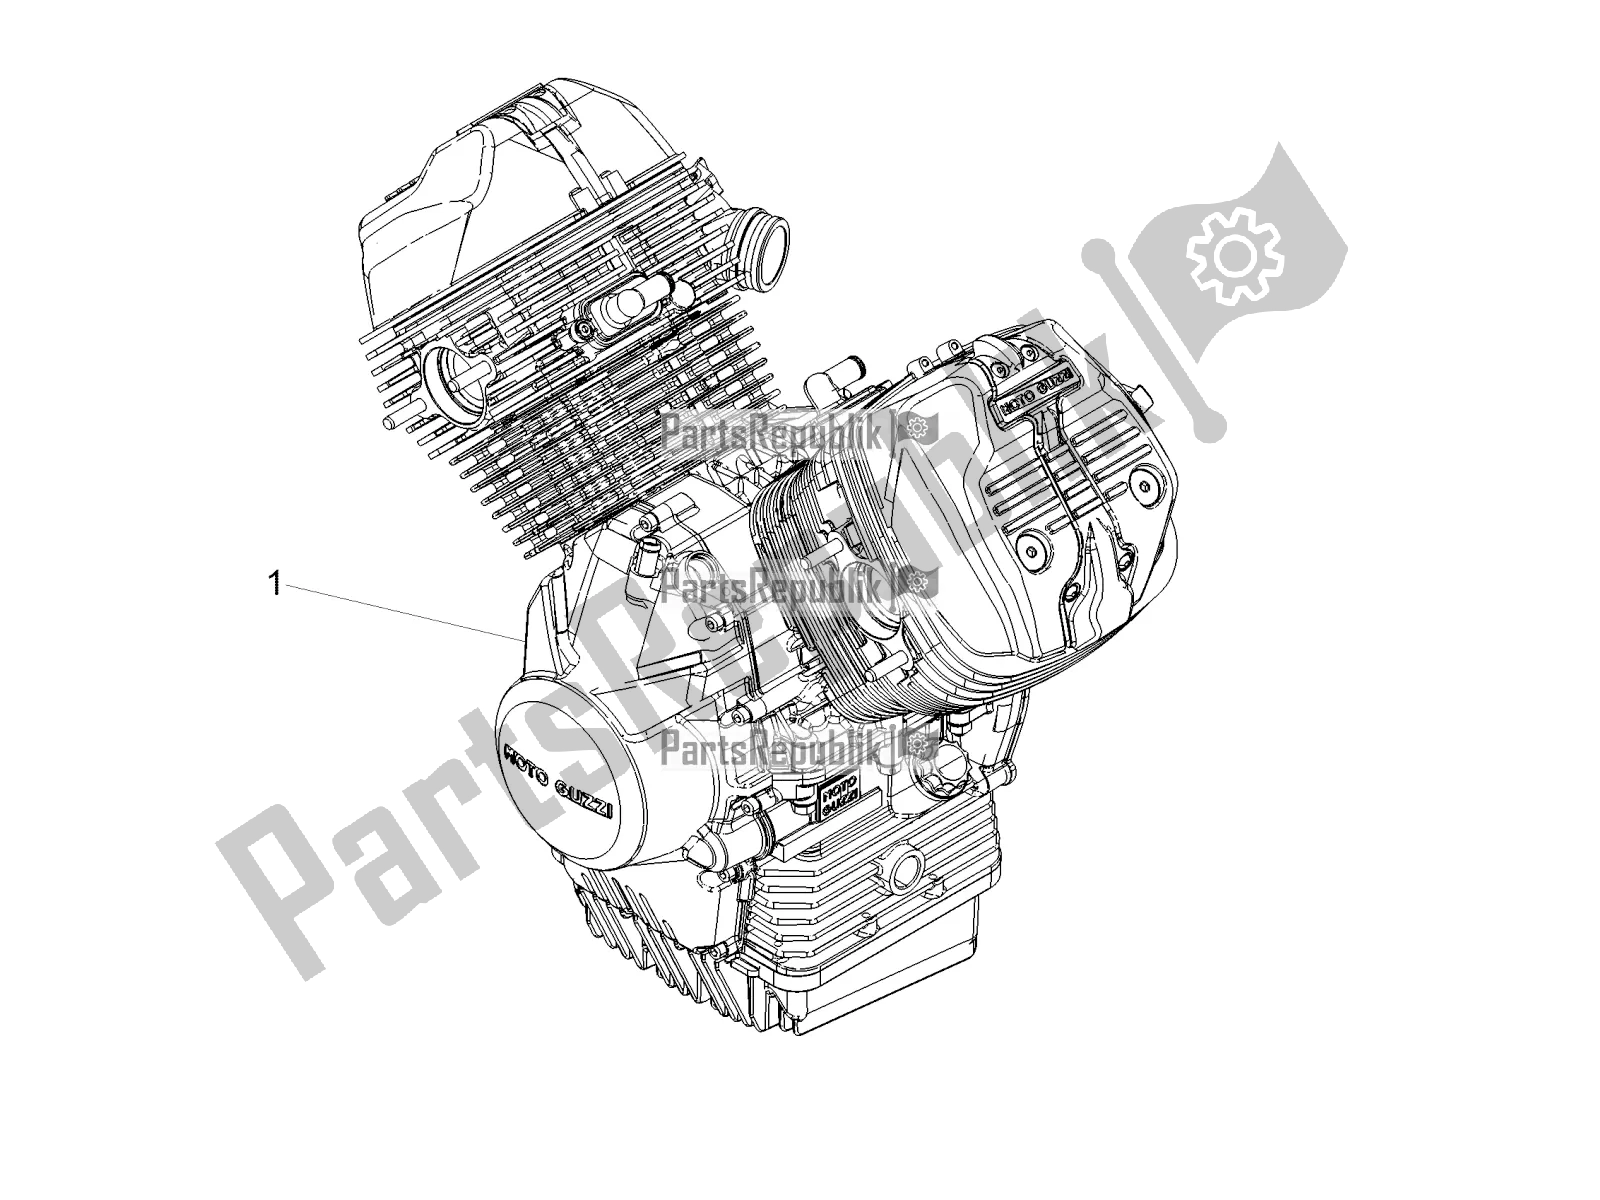 Toutes les pièces pour le Levier Partiel Pour Compléter Le Moteur du Moto-Guzzi V7 III Carbon Shine 750 2019